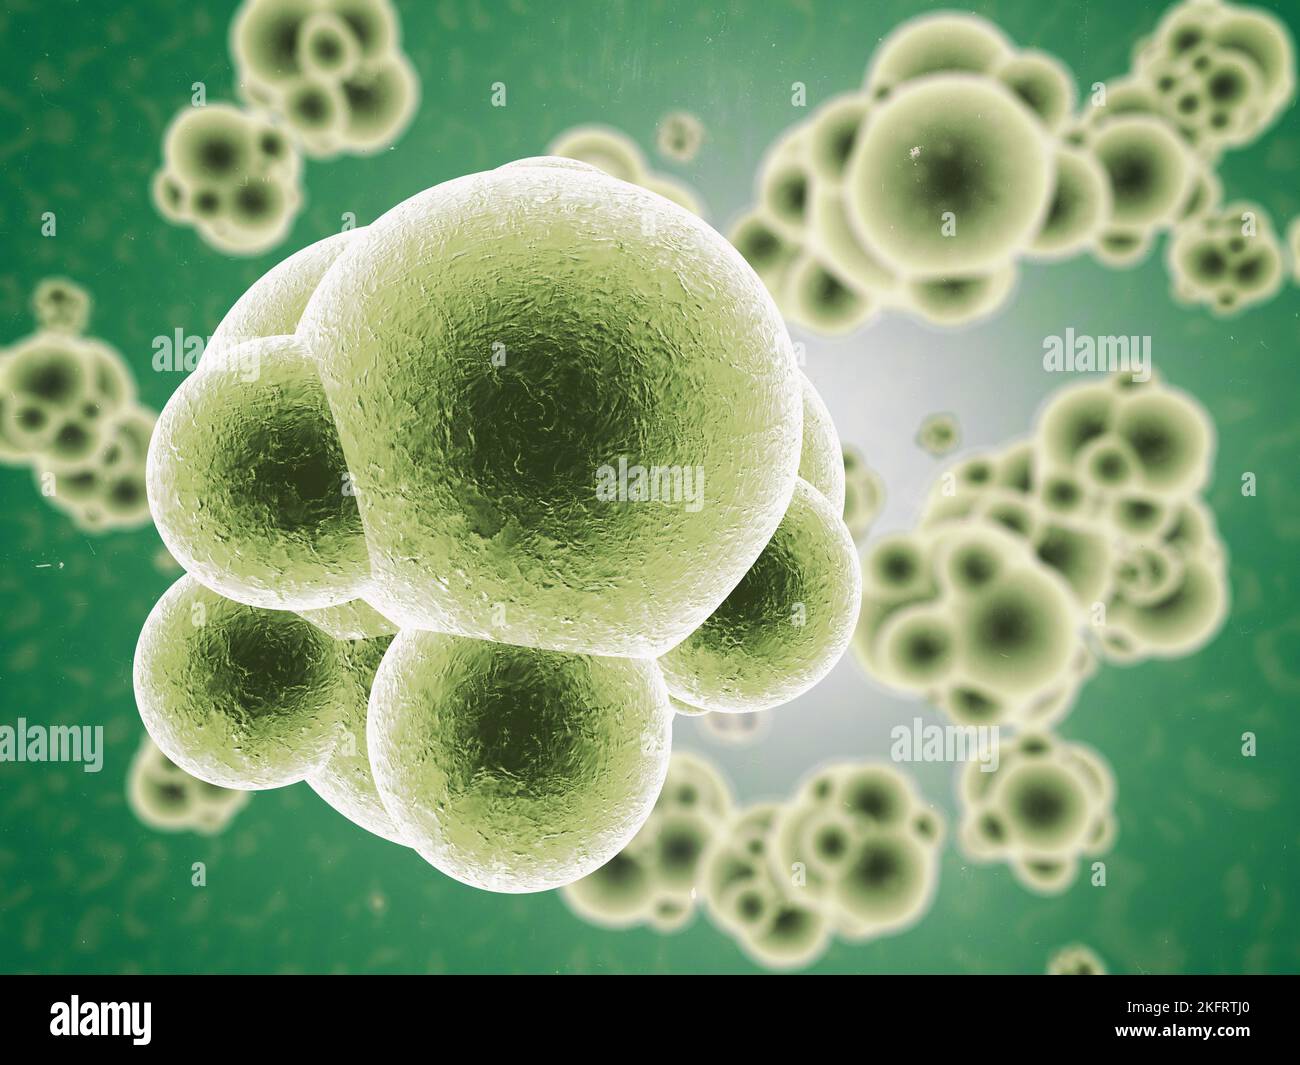 Geht fort und vervielfacht euch. Mikroskopische Ansicht multiplizierender Moleküle in Farbe. Stockfoto